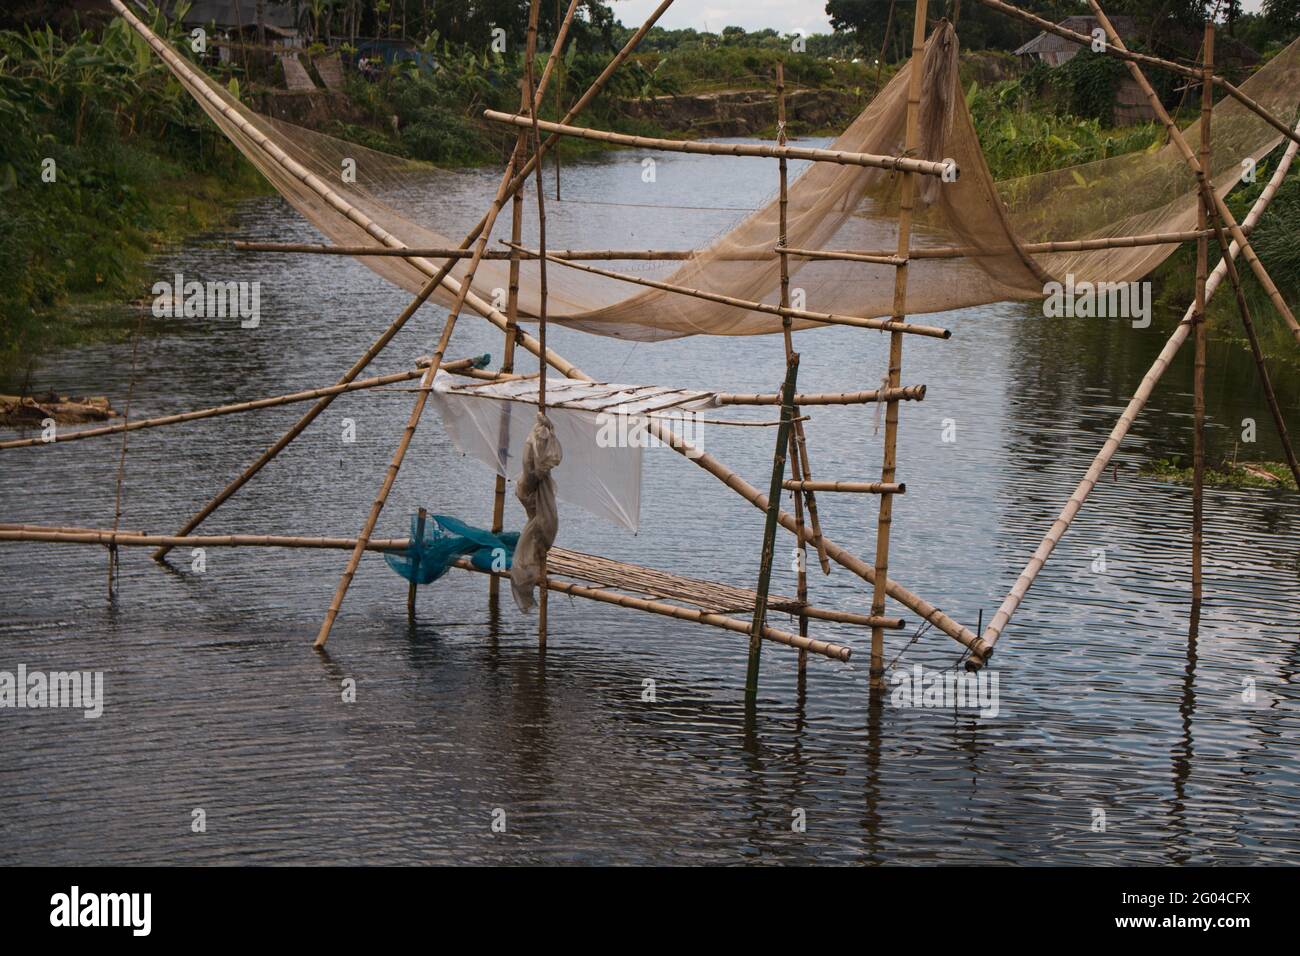 Una hermosa vista del río de Bangladesh. El nombre del río es Chatra. Los pescadores pescan en el río para obtener redes. Foto de stock